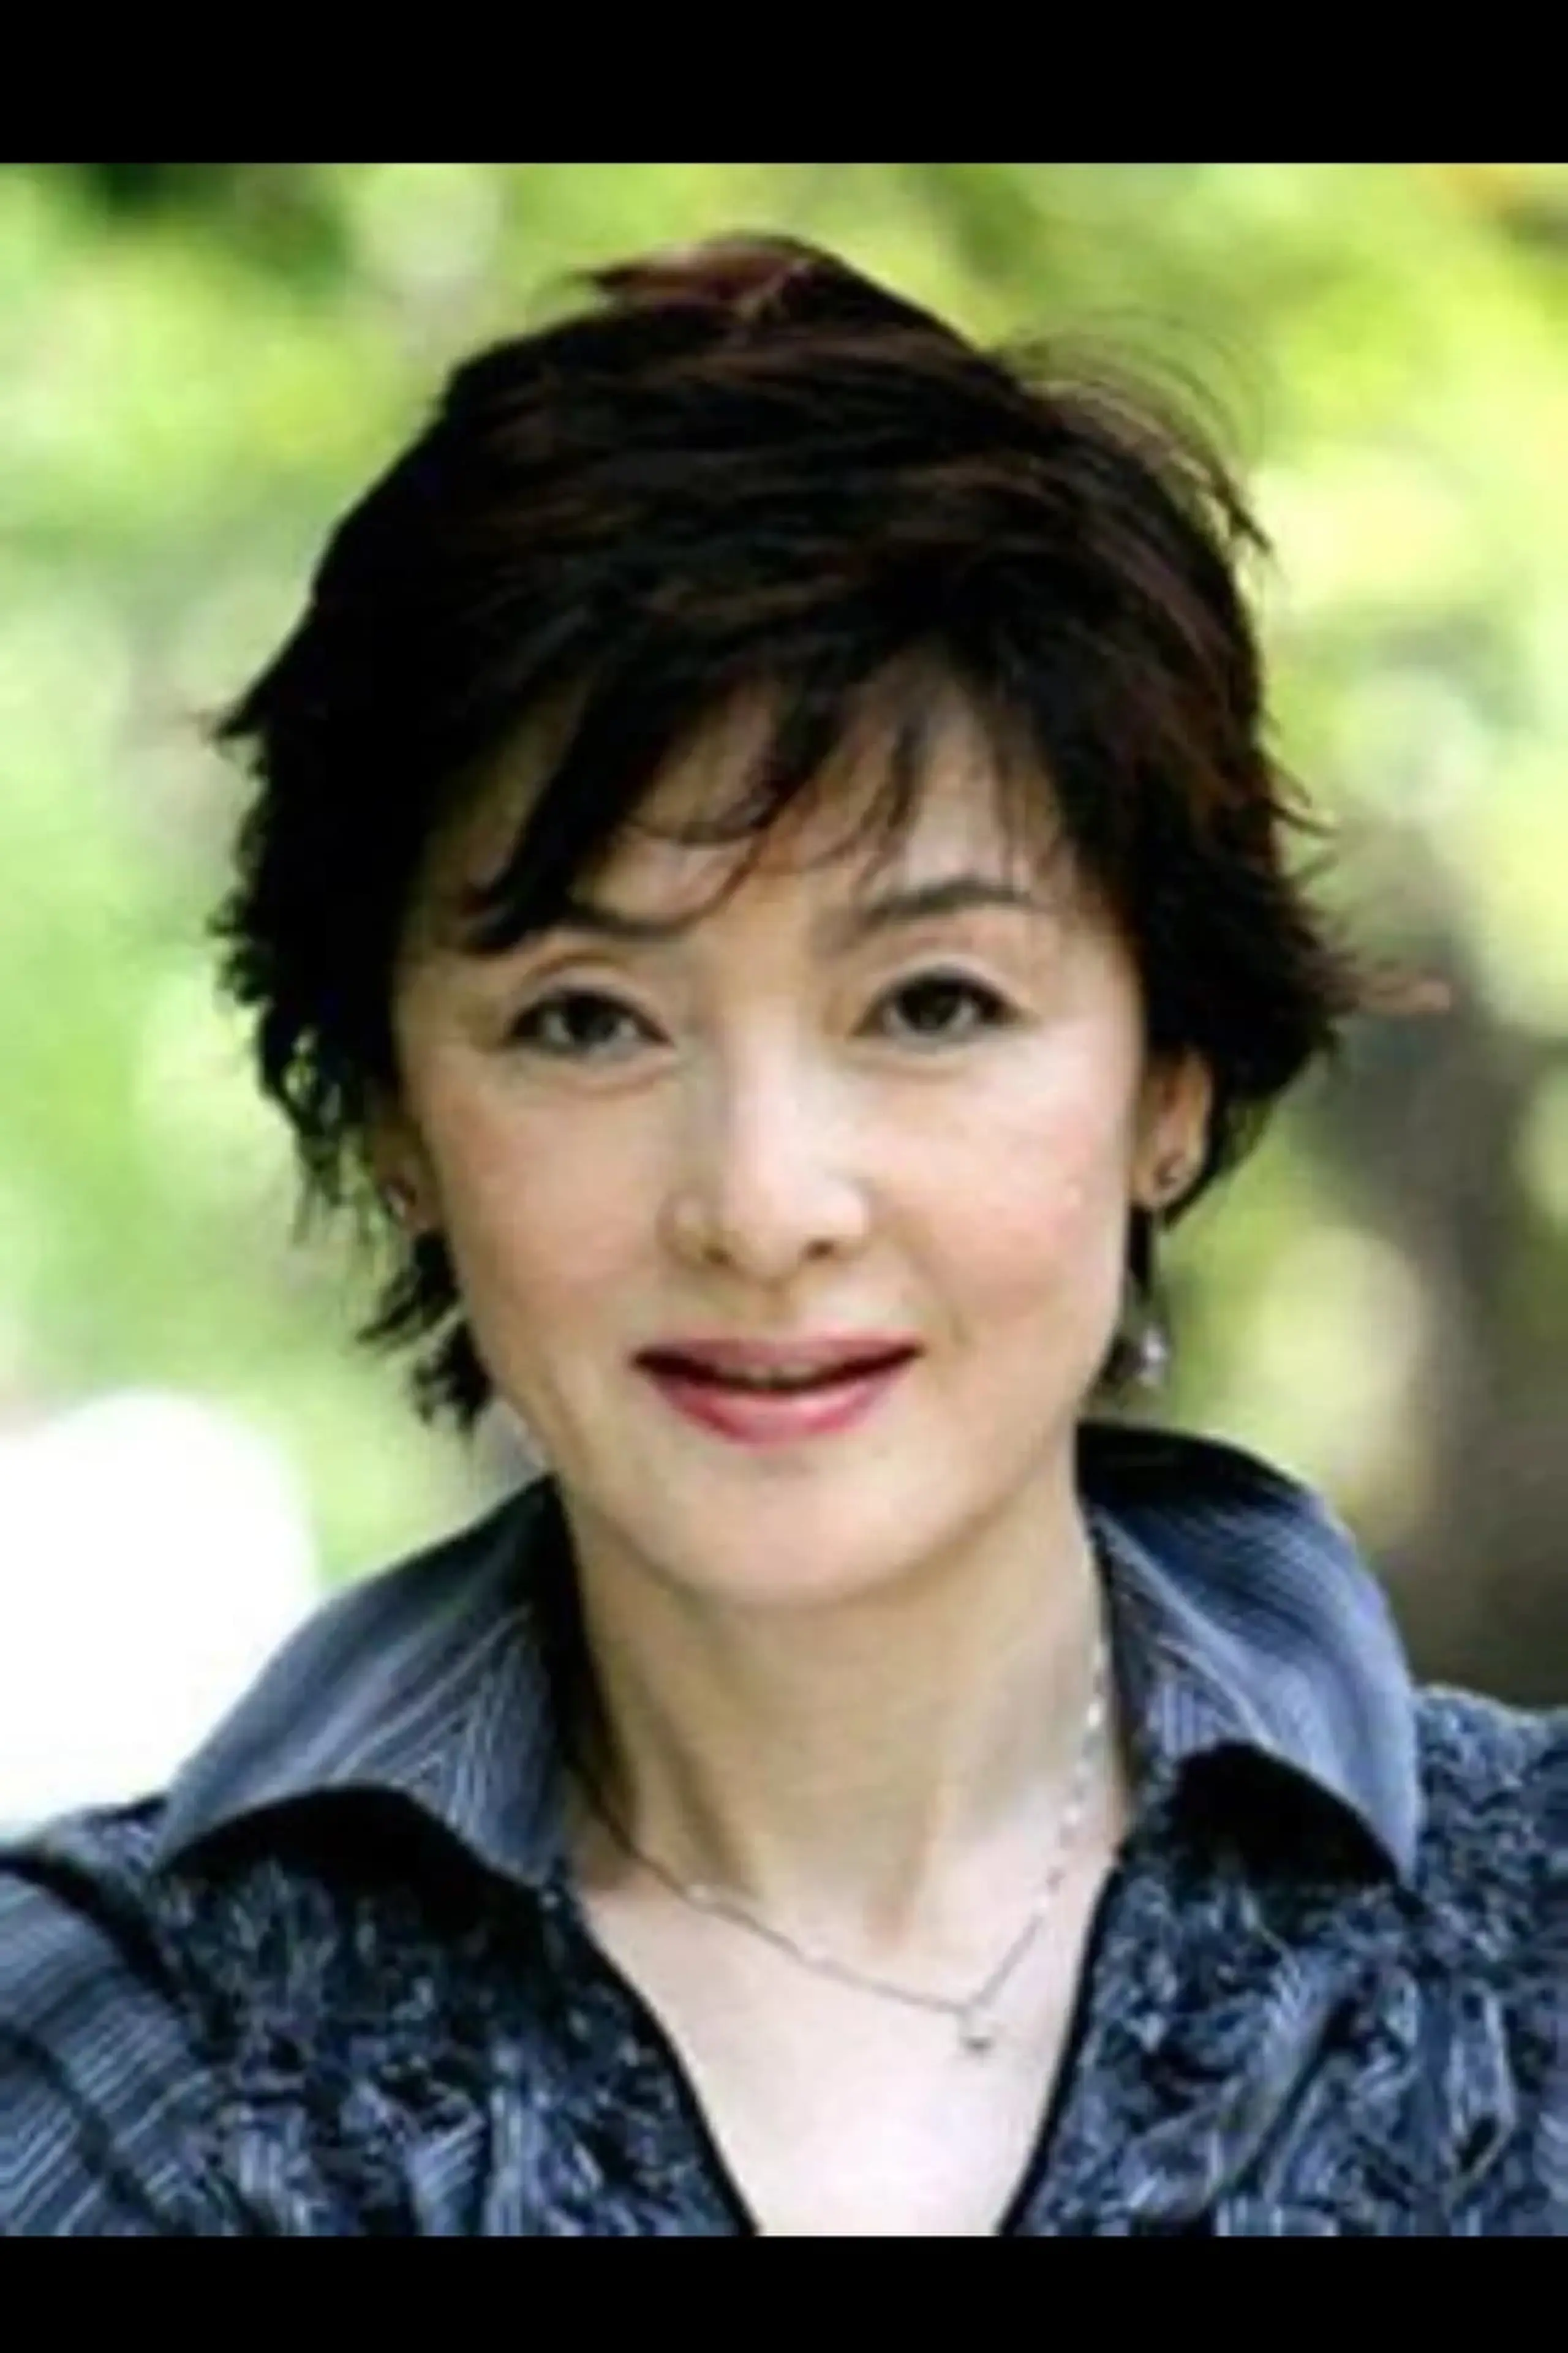 Akiko Hyûga